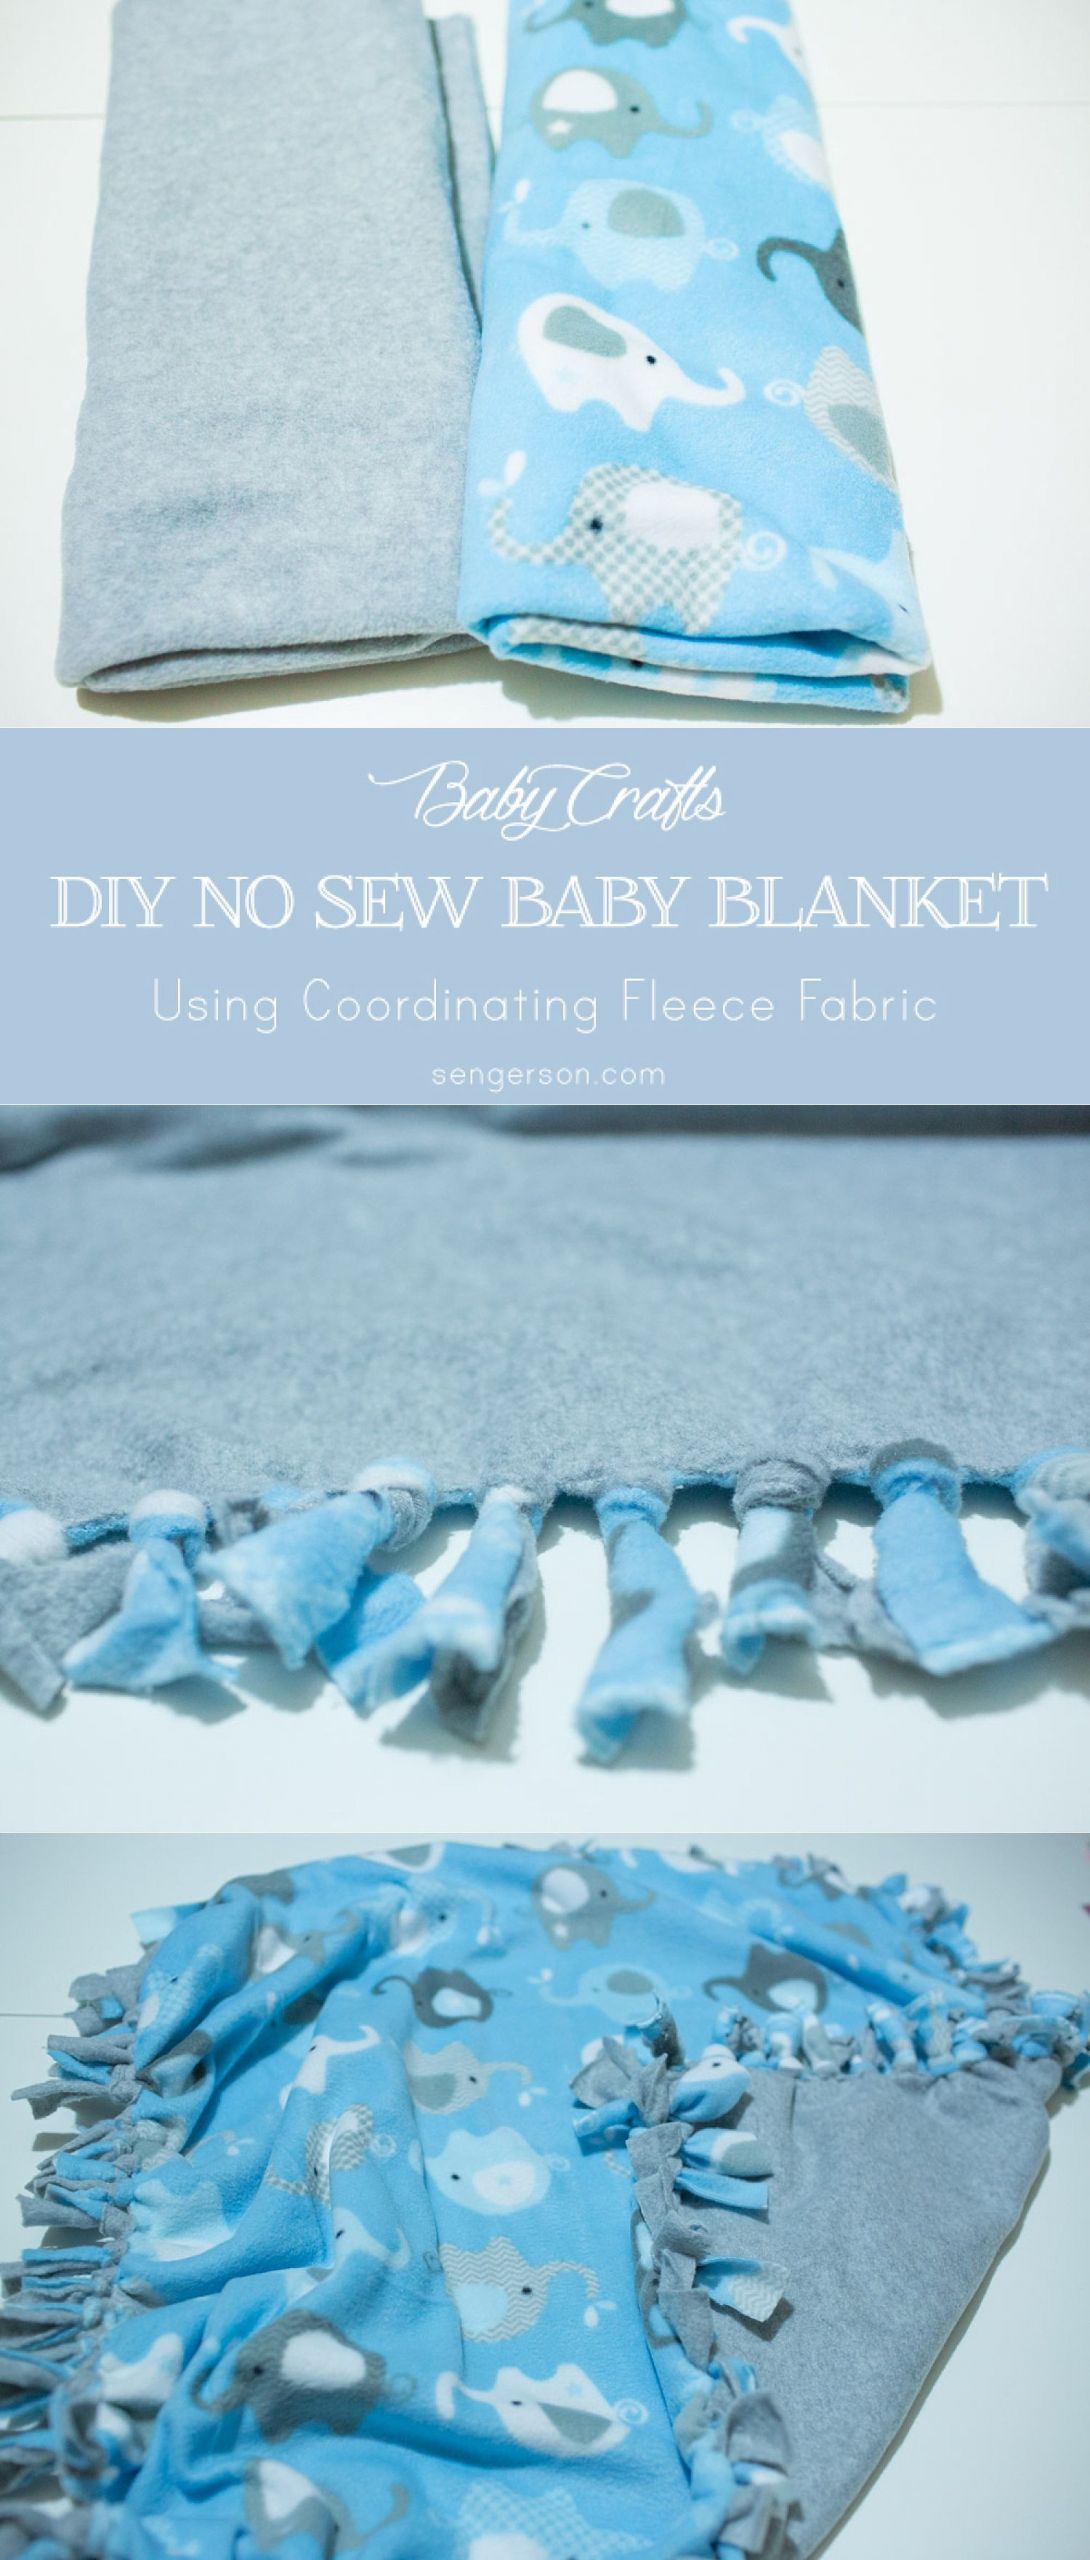 DIY Fleece Baby Blanket
 No Sew Fleece Baby Blanket Tutorial 6 Easy Steps with